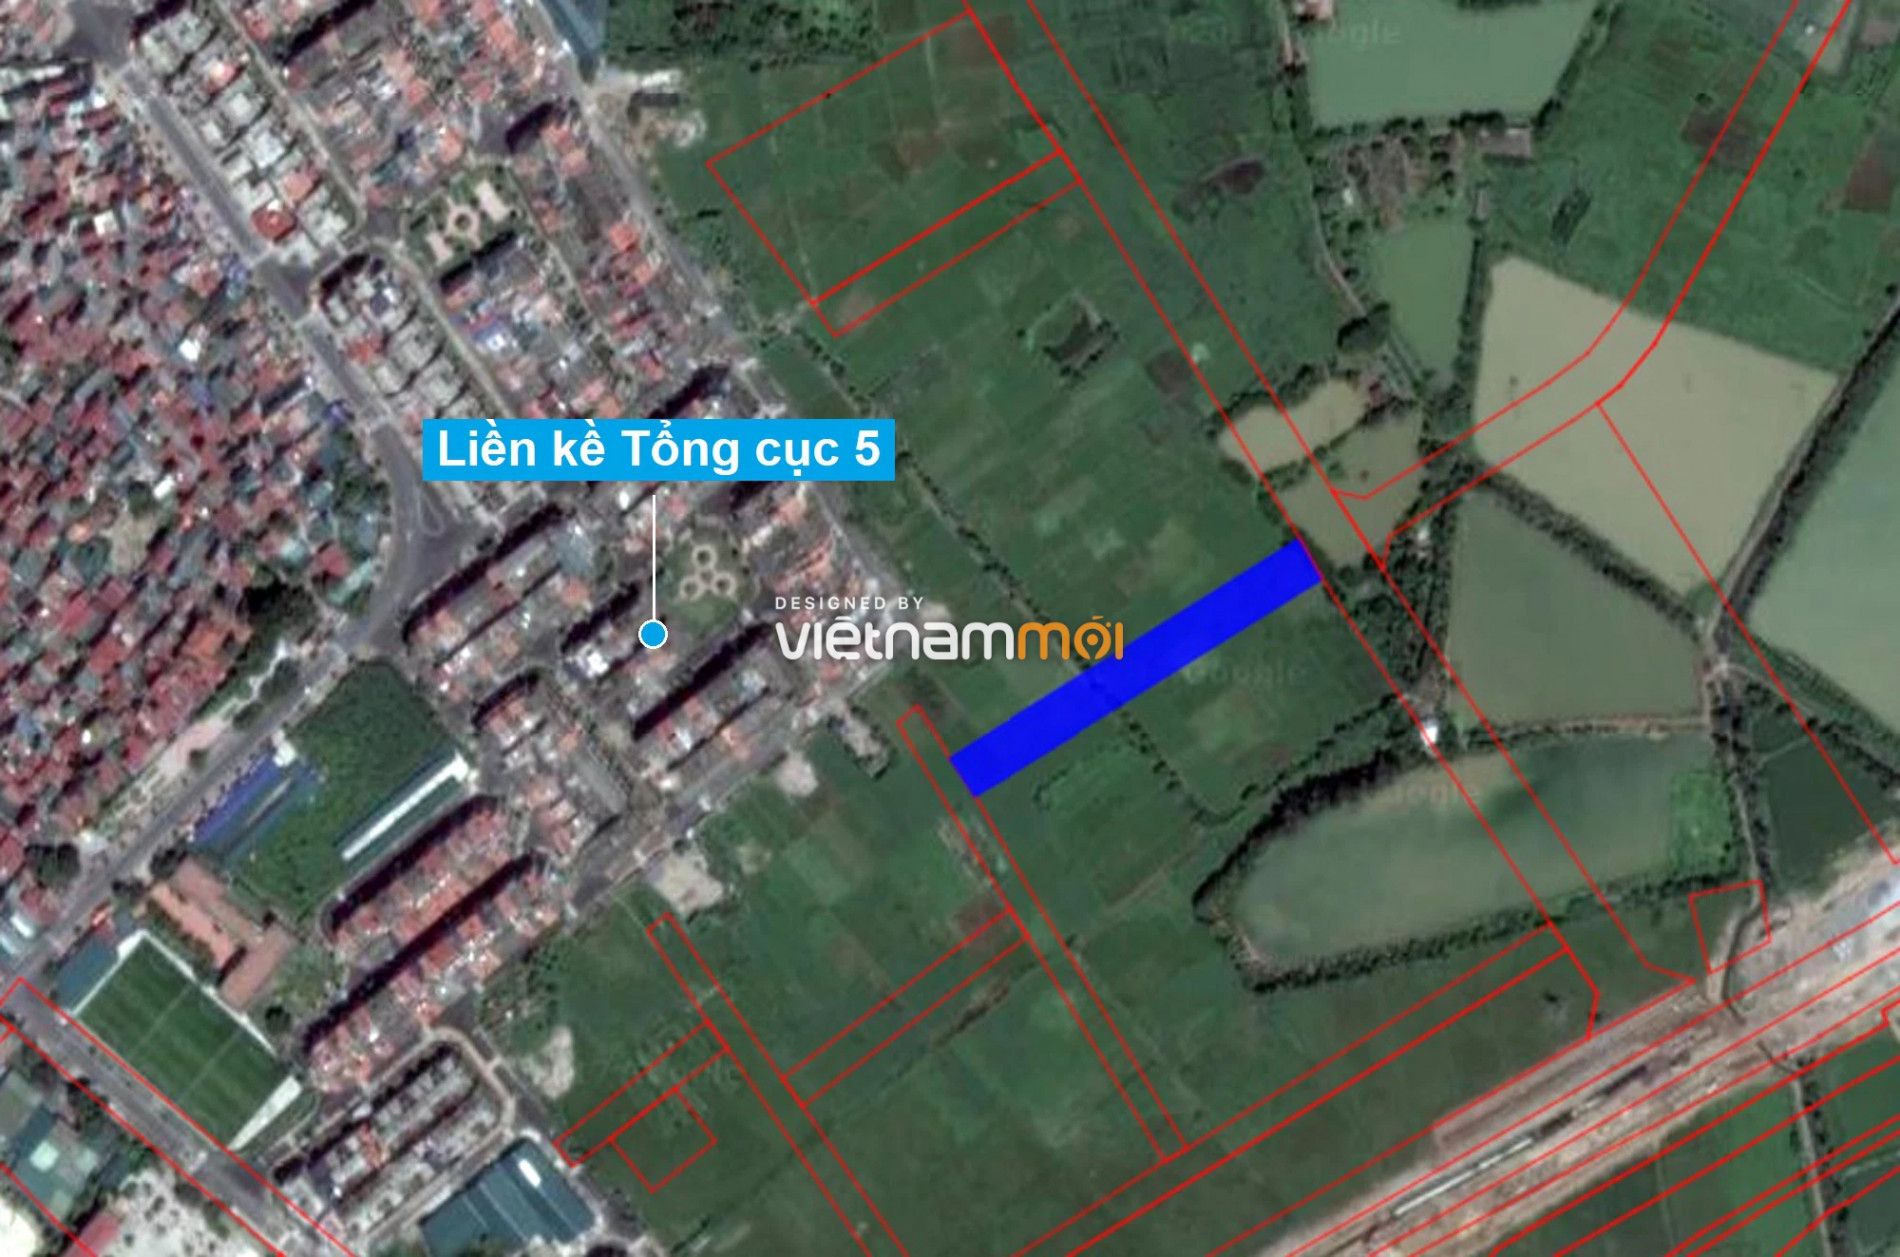 Những khu đất sắp thu hồi để mở đường ở xã Tân Triều, Thanh Trì, Hà Nội (phần 11) - Ảnh 9.